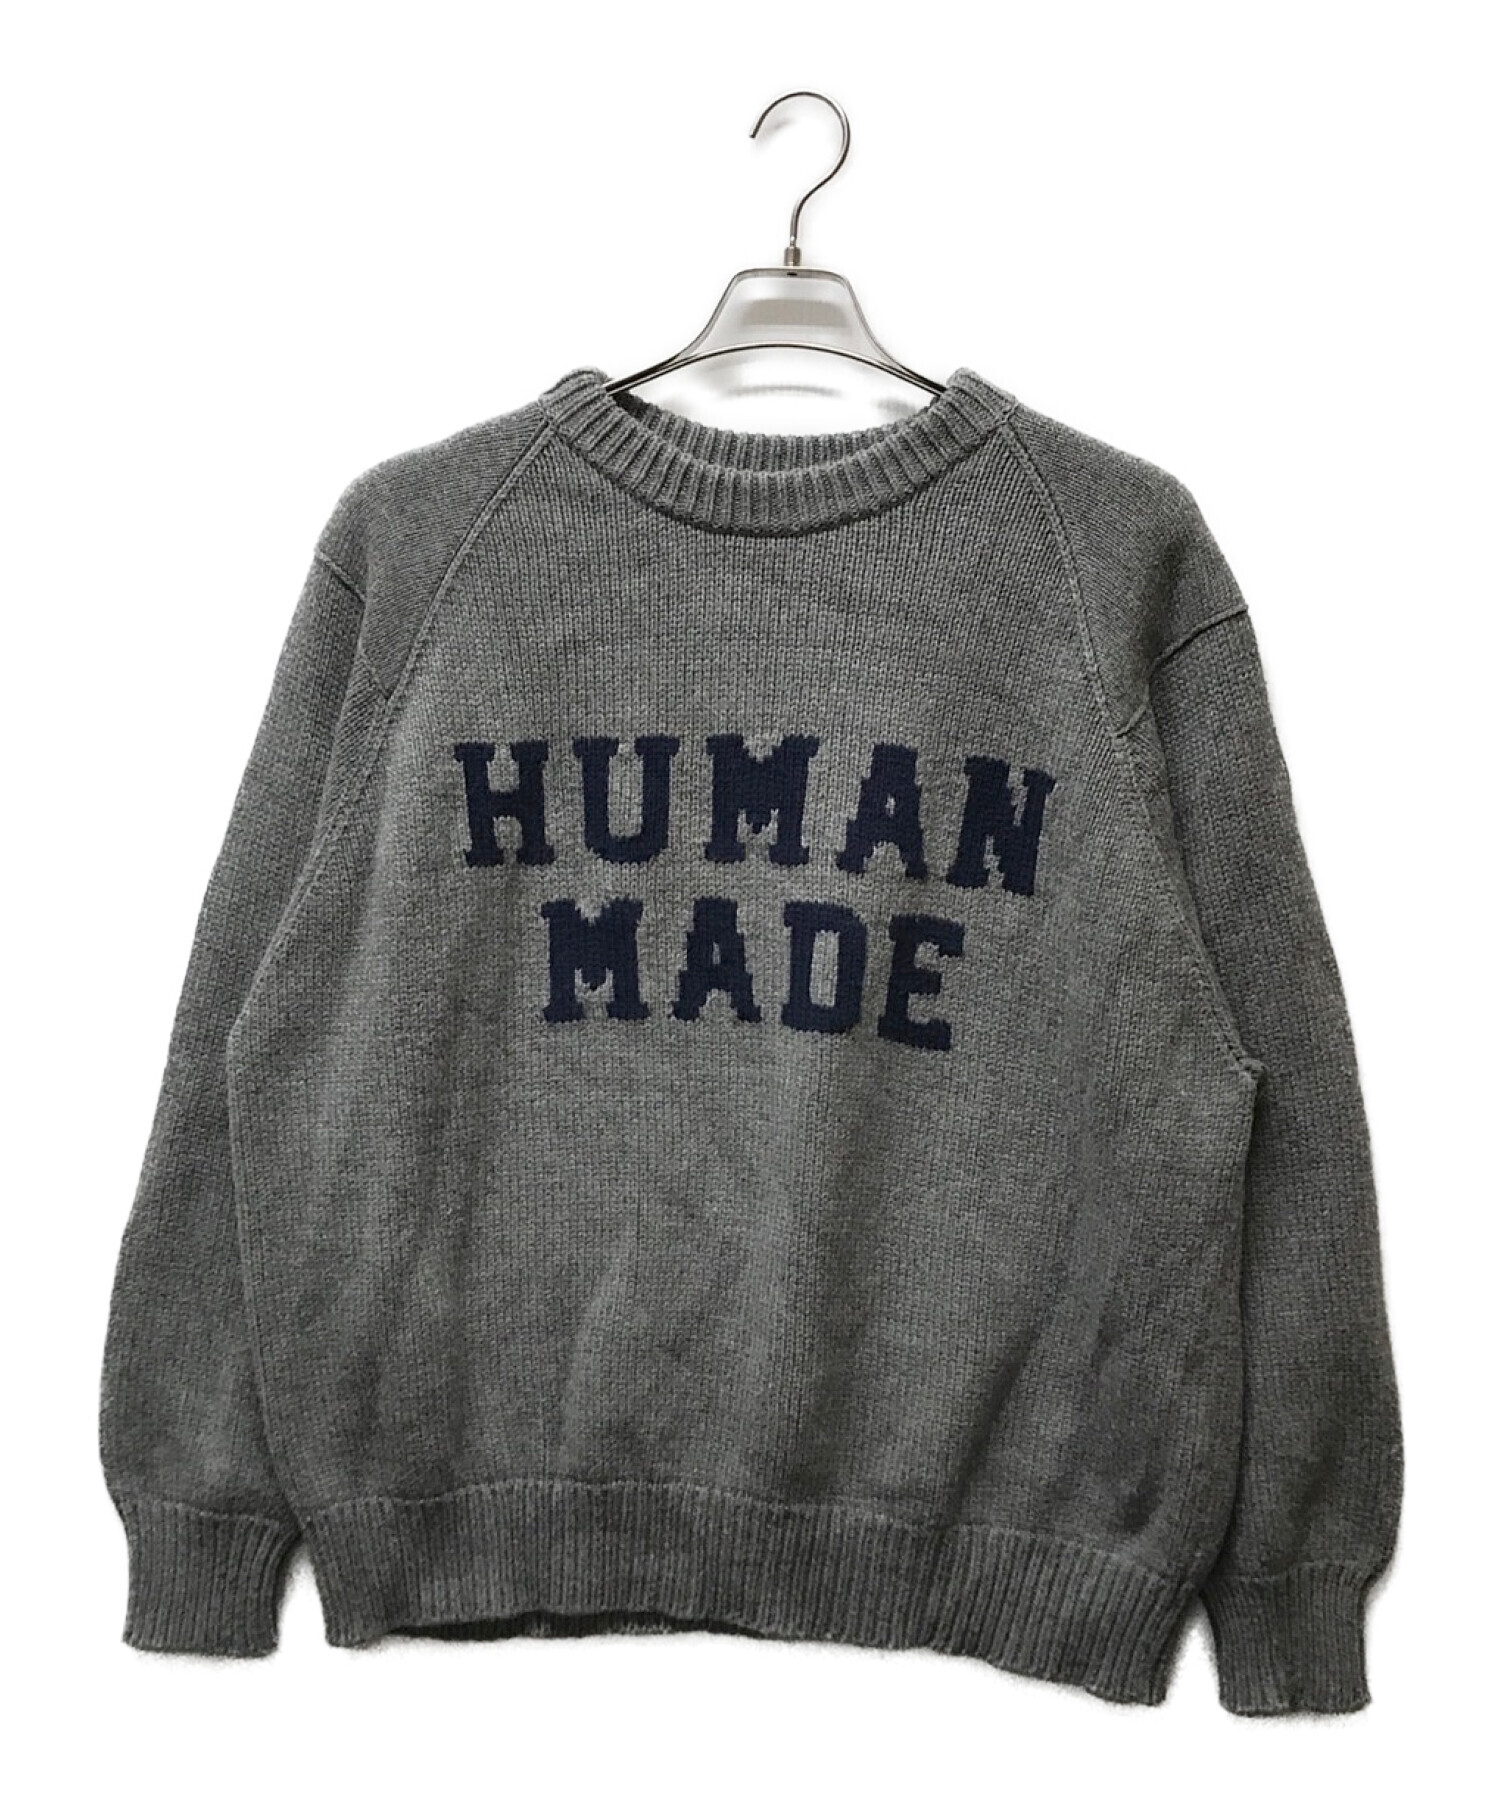 HUMAN MADE (ヒューマンメイド) DRY ALLSタイガーロゴ ニット セーター グレー サイズ:L